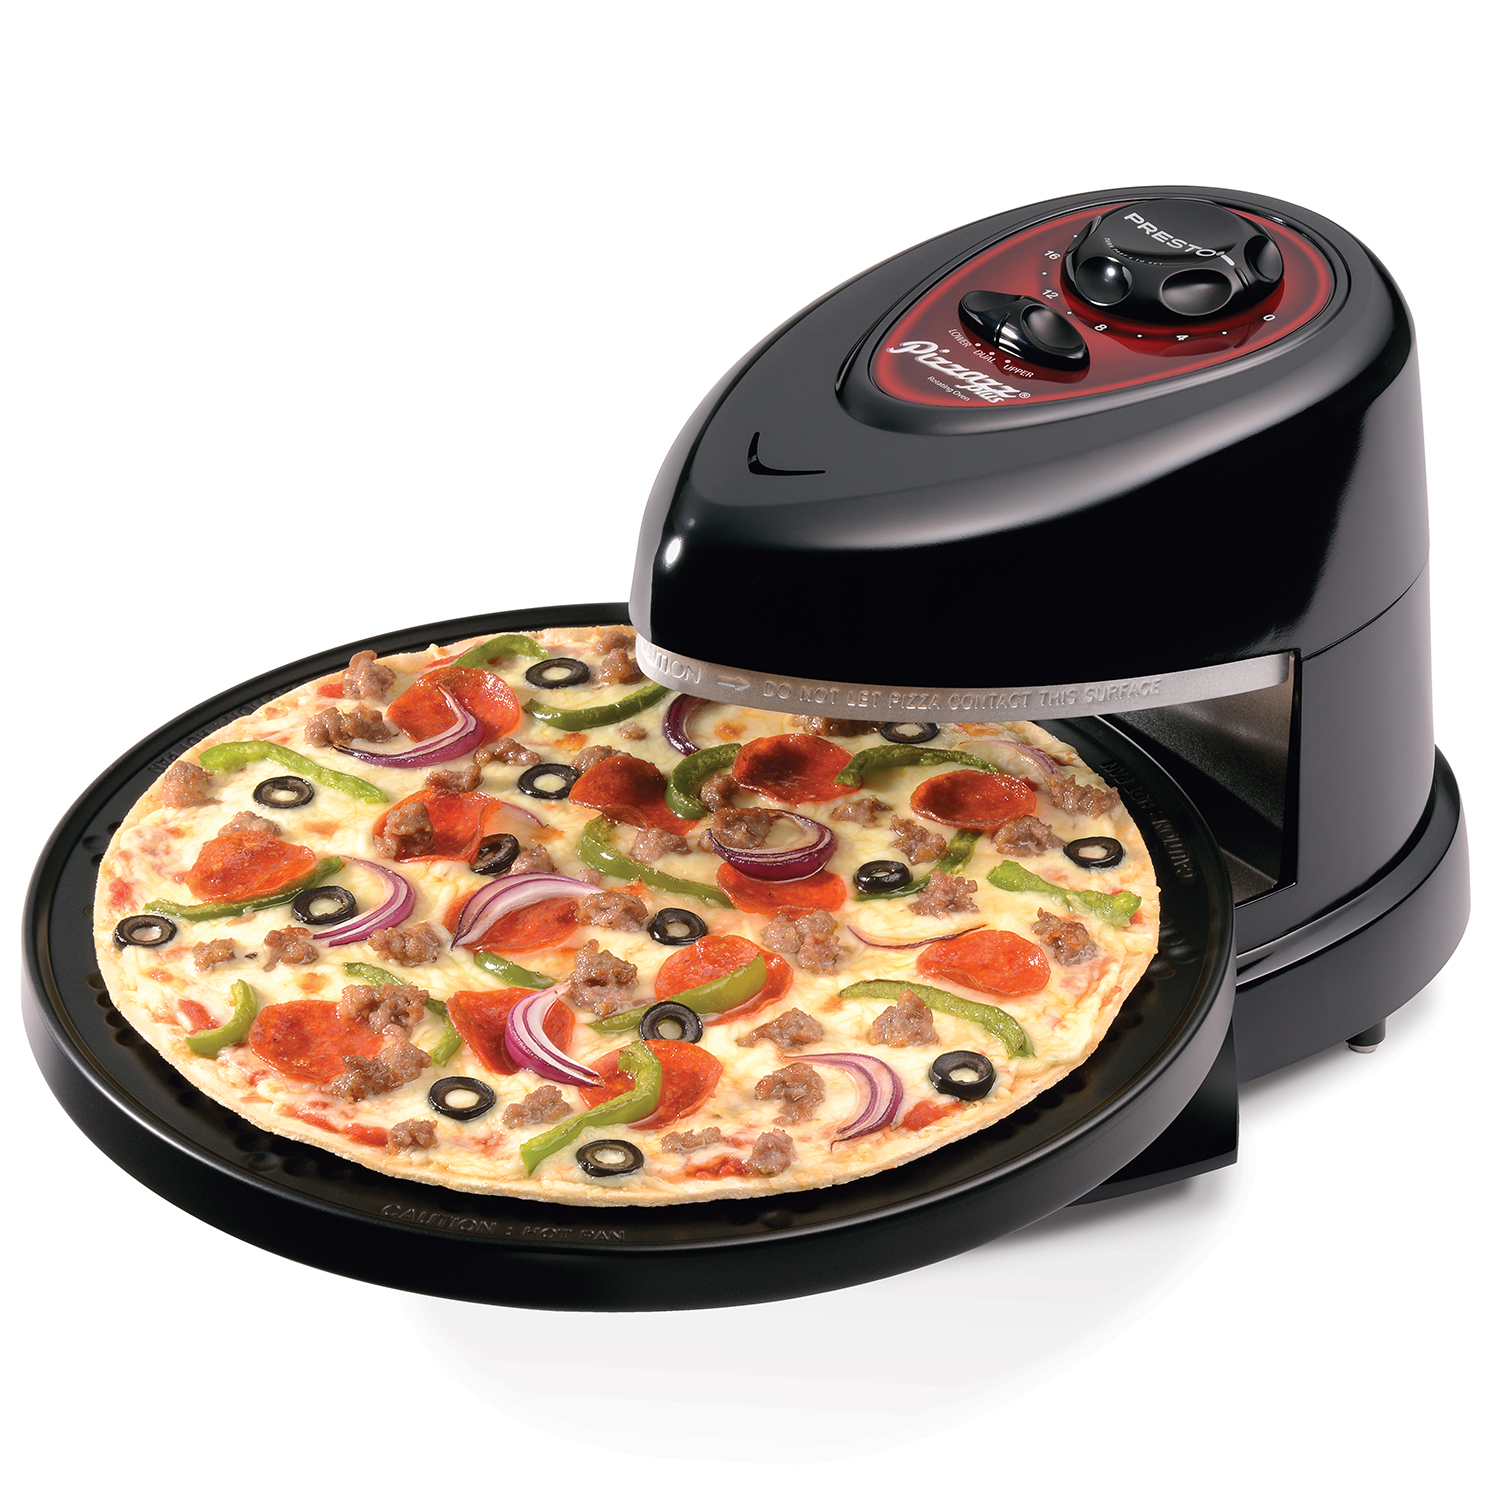 Presto Pizzazz Plus Rotating Pizza Oven, 03430 Black - image 1 of 3